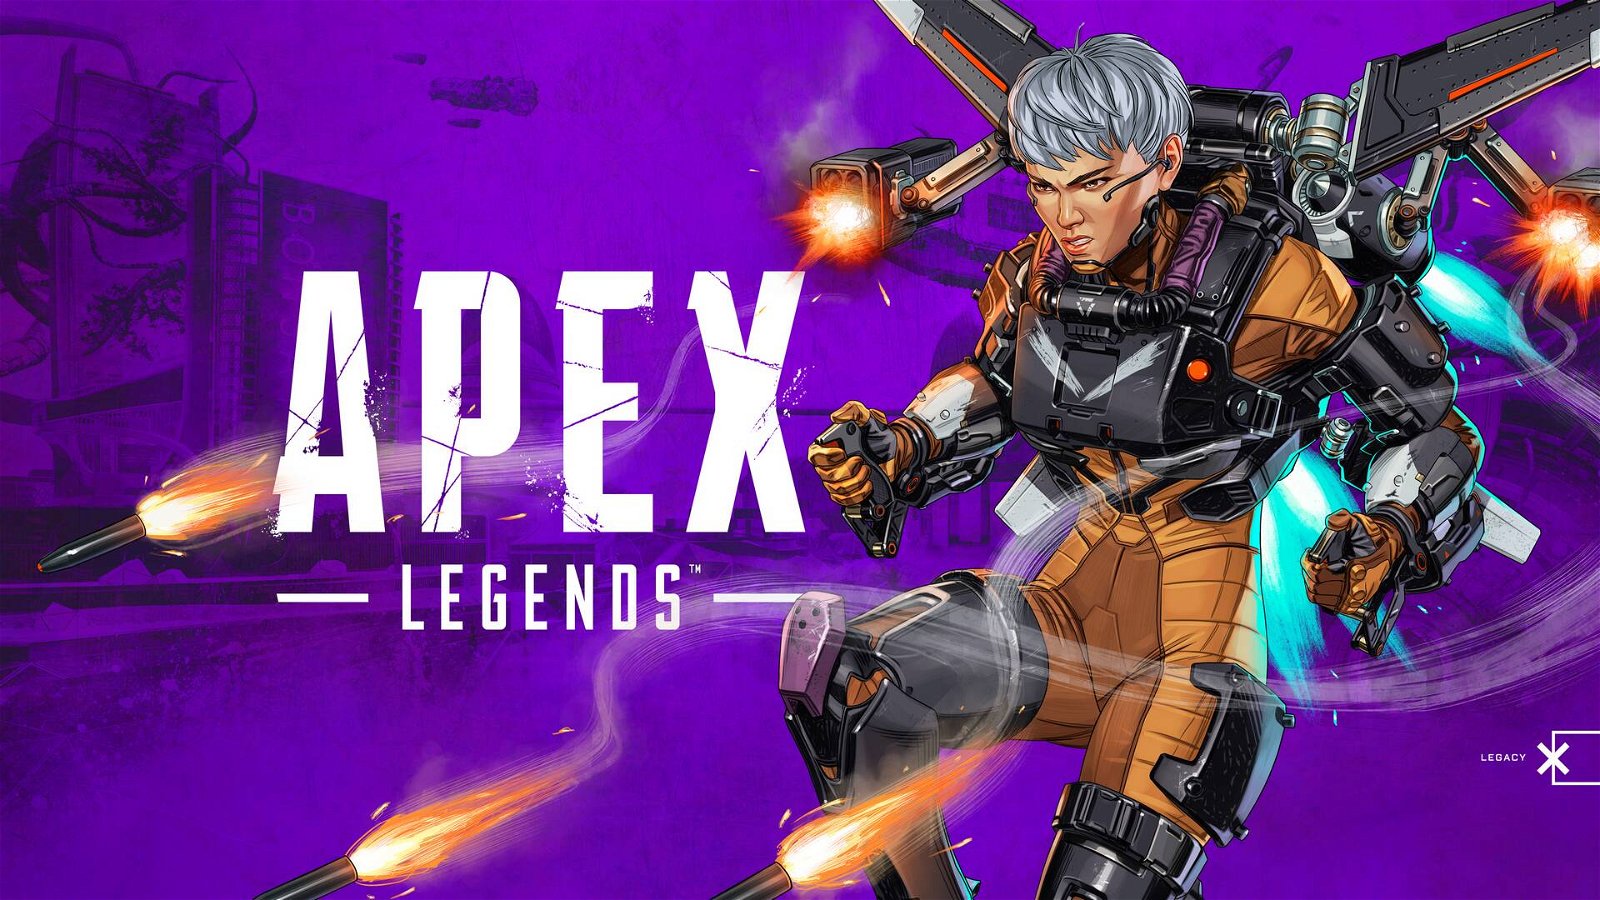 Immagine di Apex Legends, una stanza segreta potrebbe avvantaggiare i giocatori